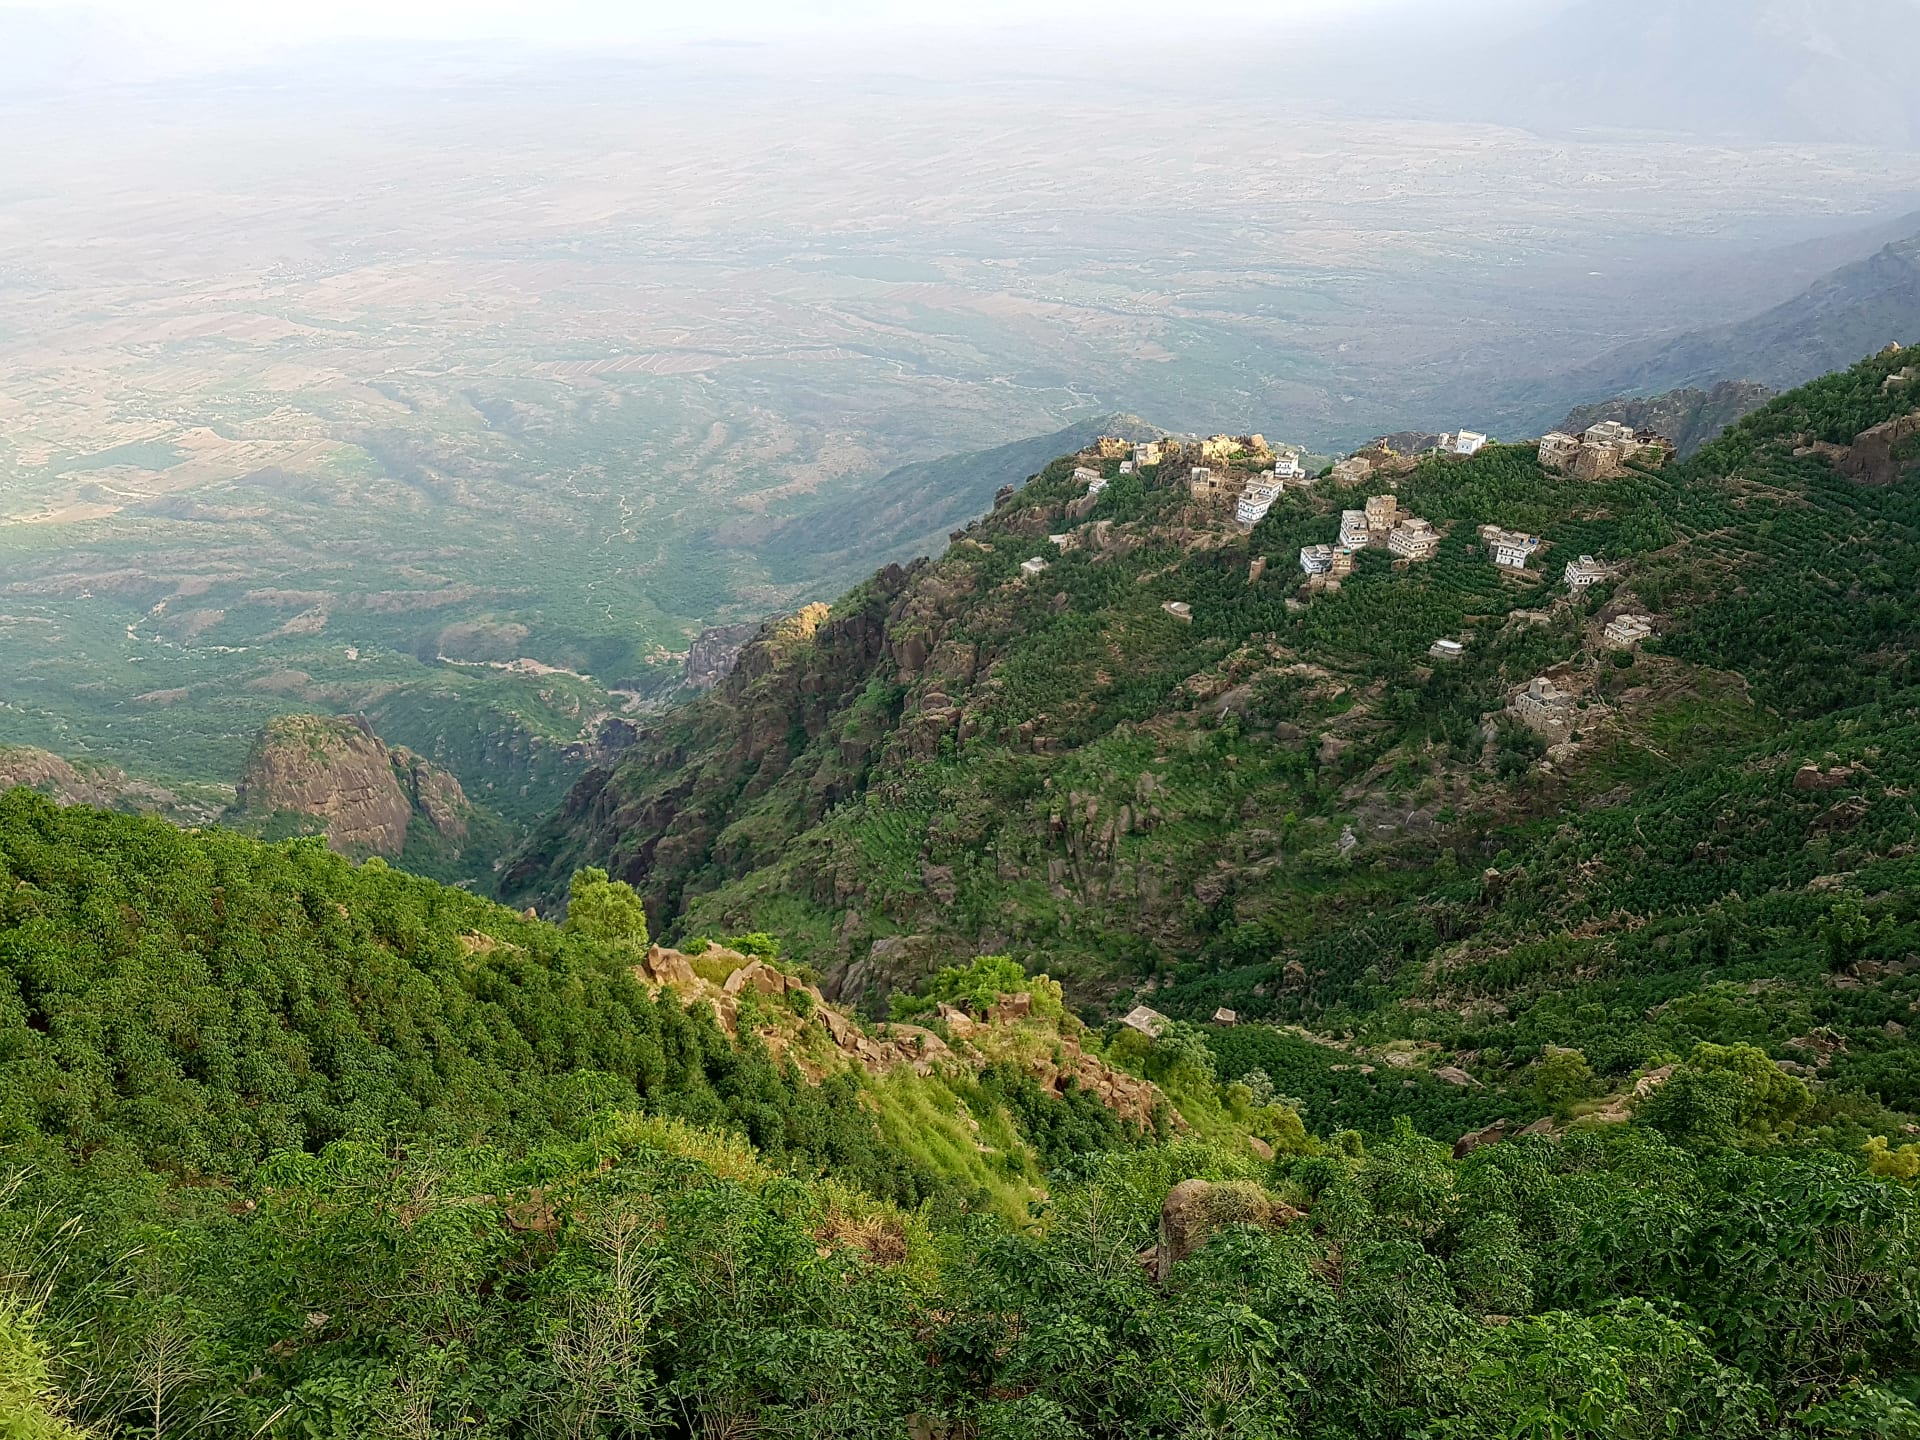  في اليمن.. استكشف آخر بقايا الغابات شبه الاستوائية الواسعة في شبه الجزيرة العربية بهذا الجبل الزاهي